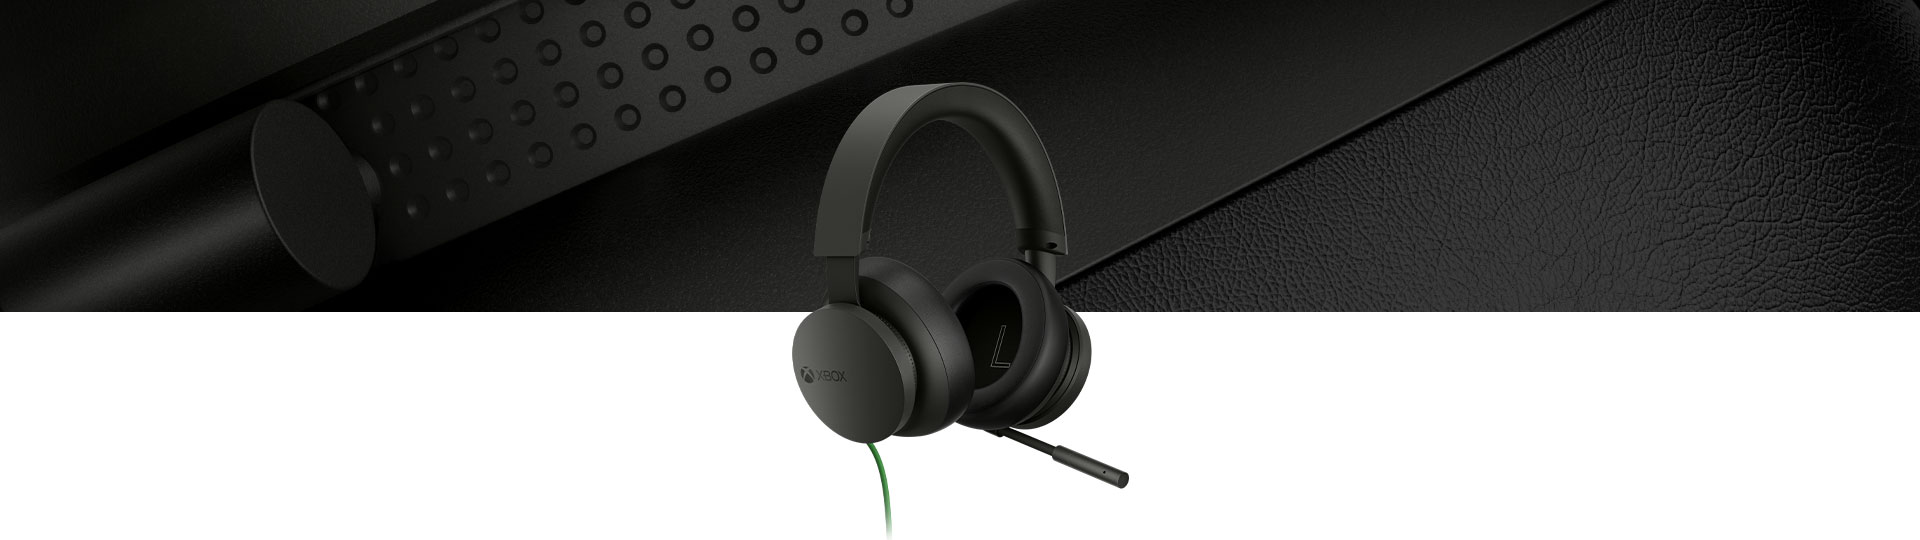 Xbox 立體聲耳機與背景中的耳機特寫